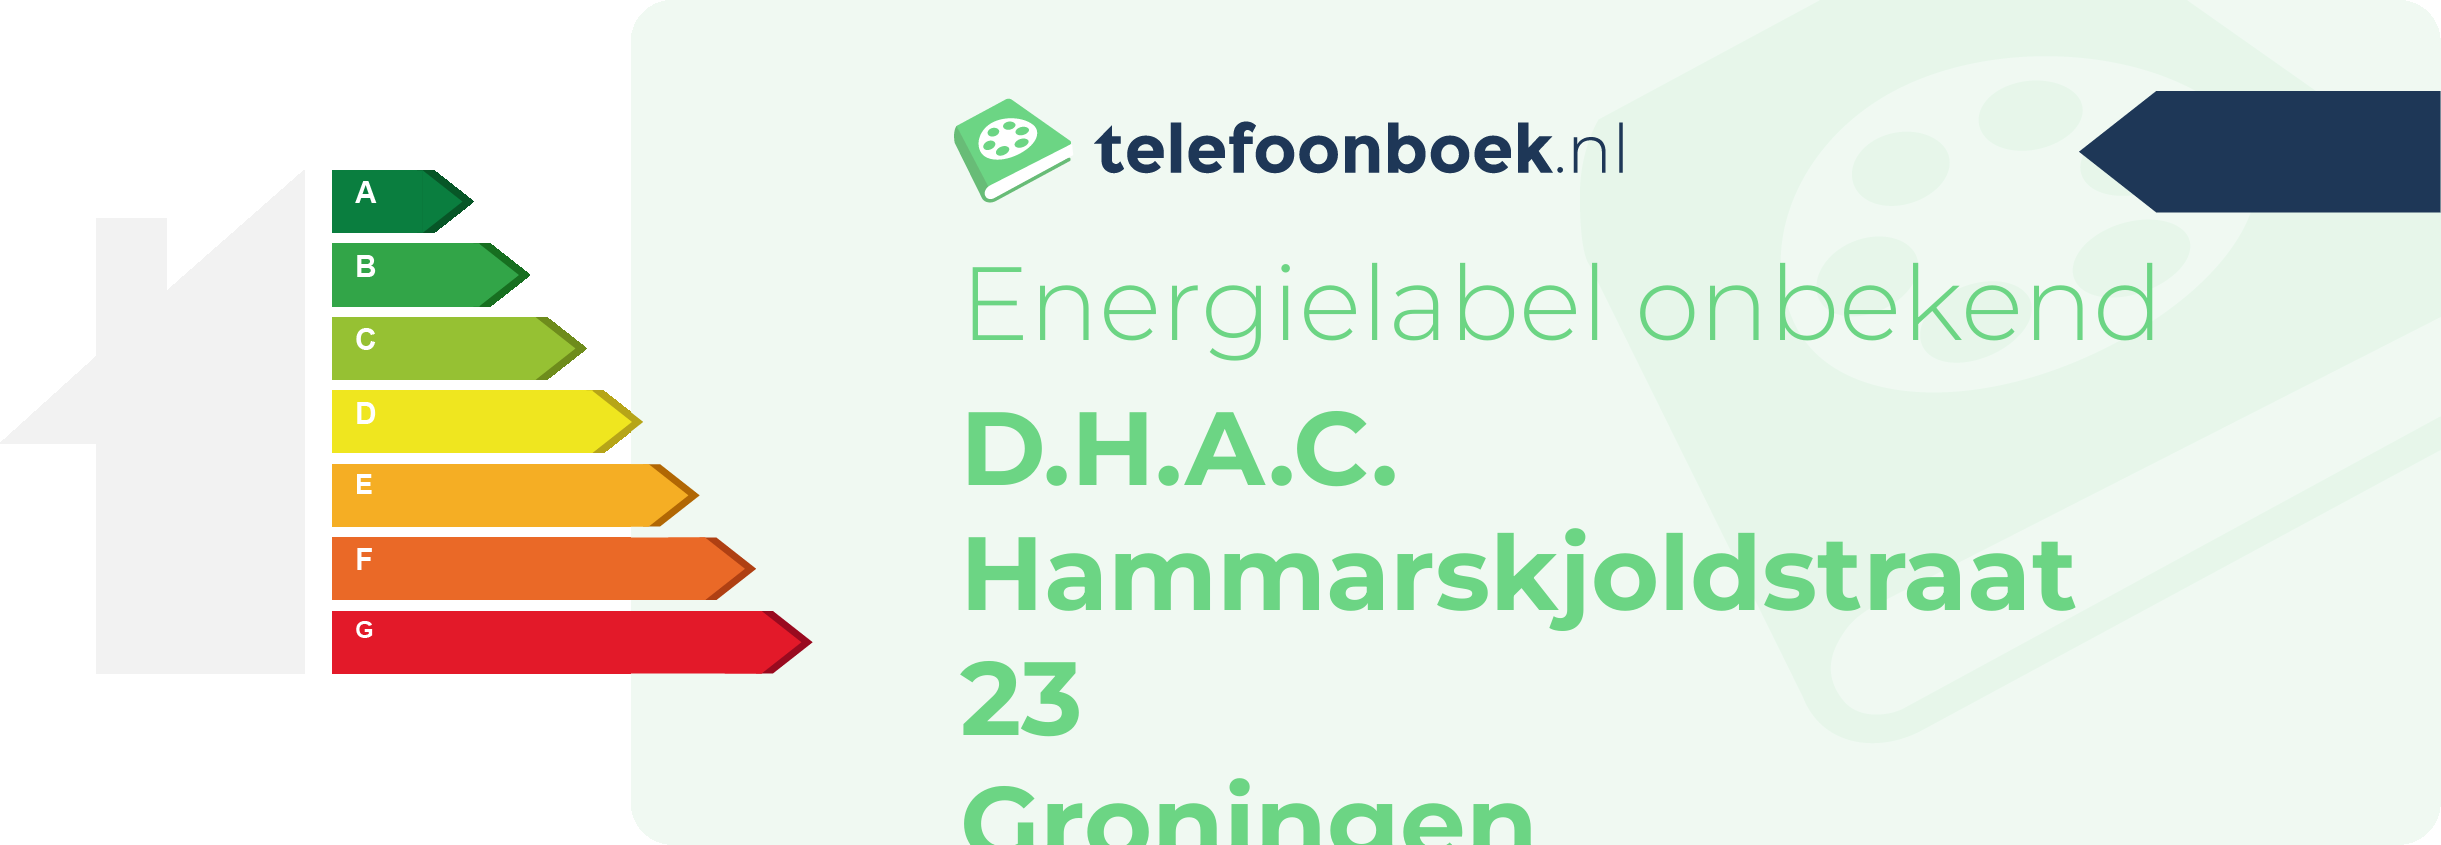 Energielabel D.H.A.C. Hammarskjoldstraat 23 Groningen